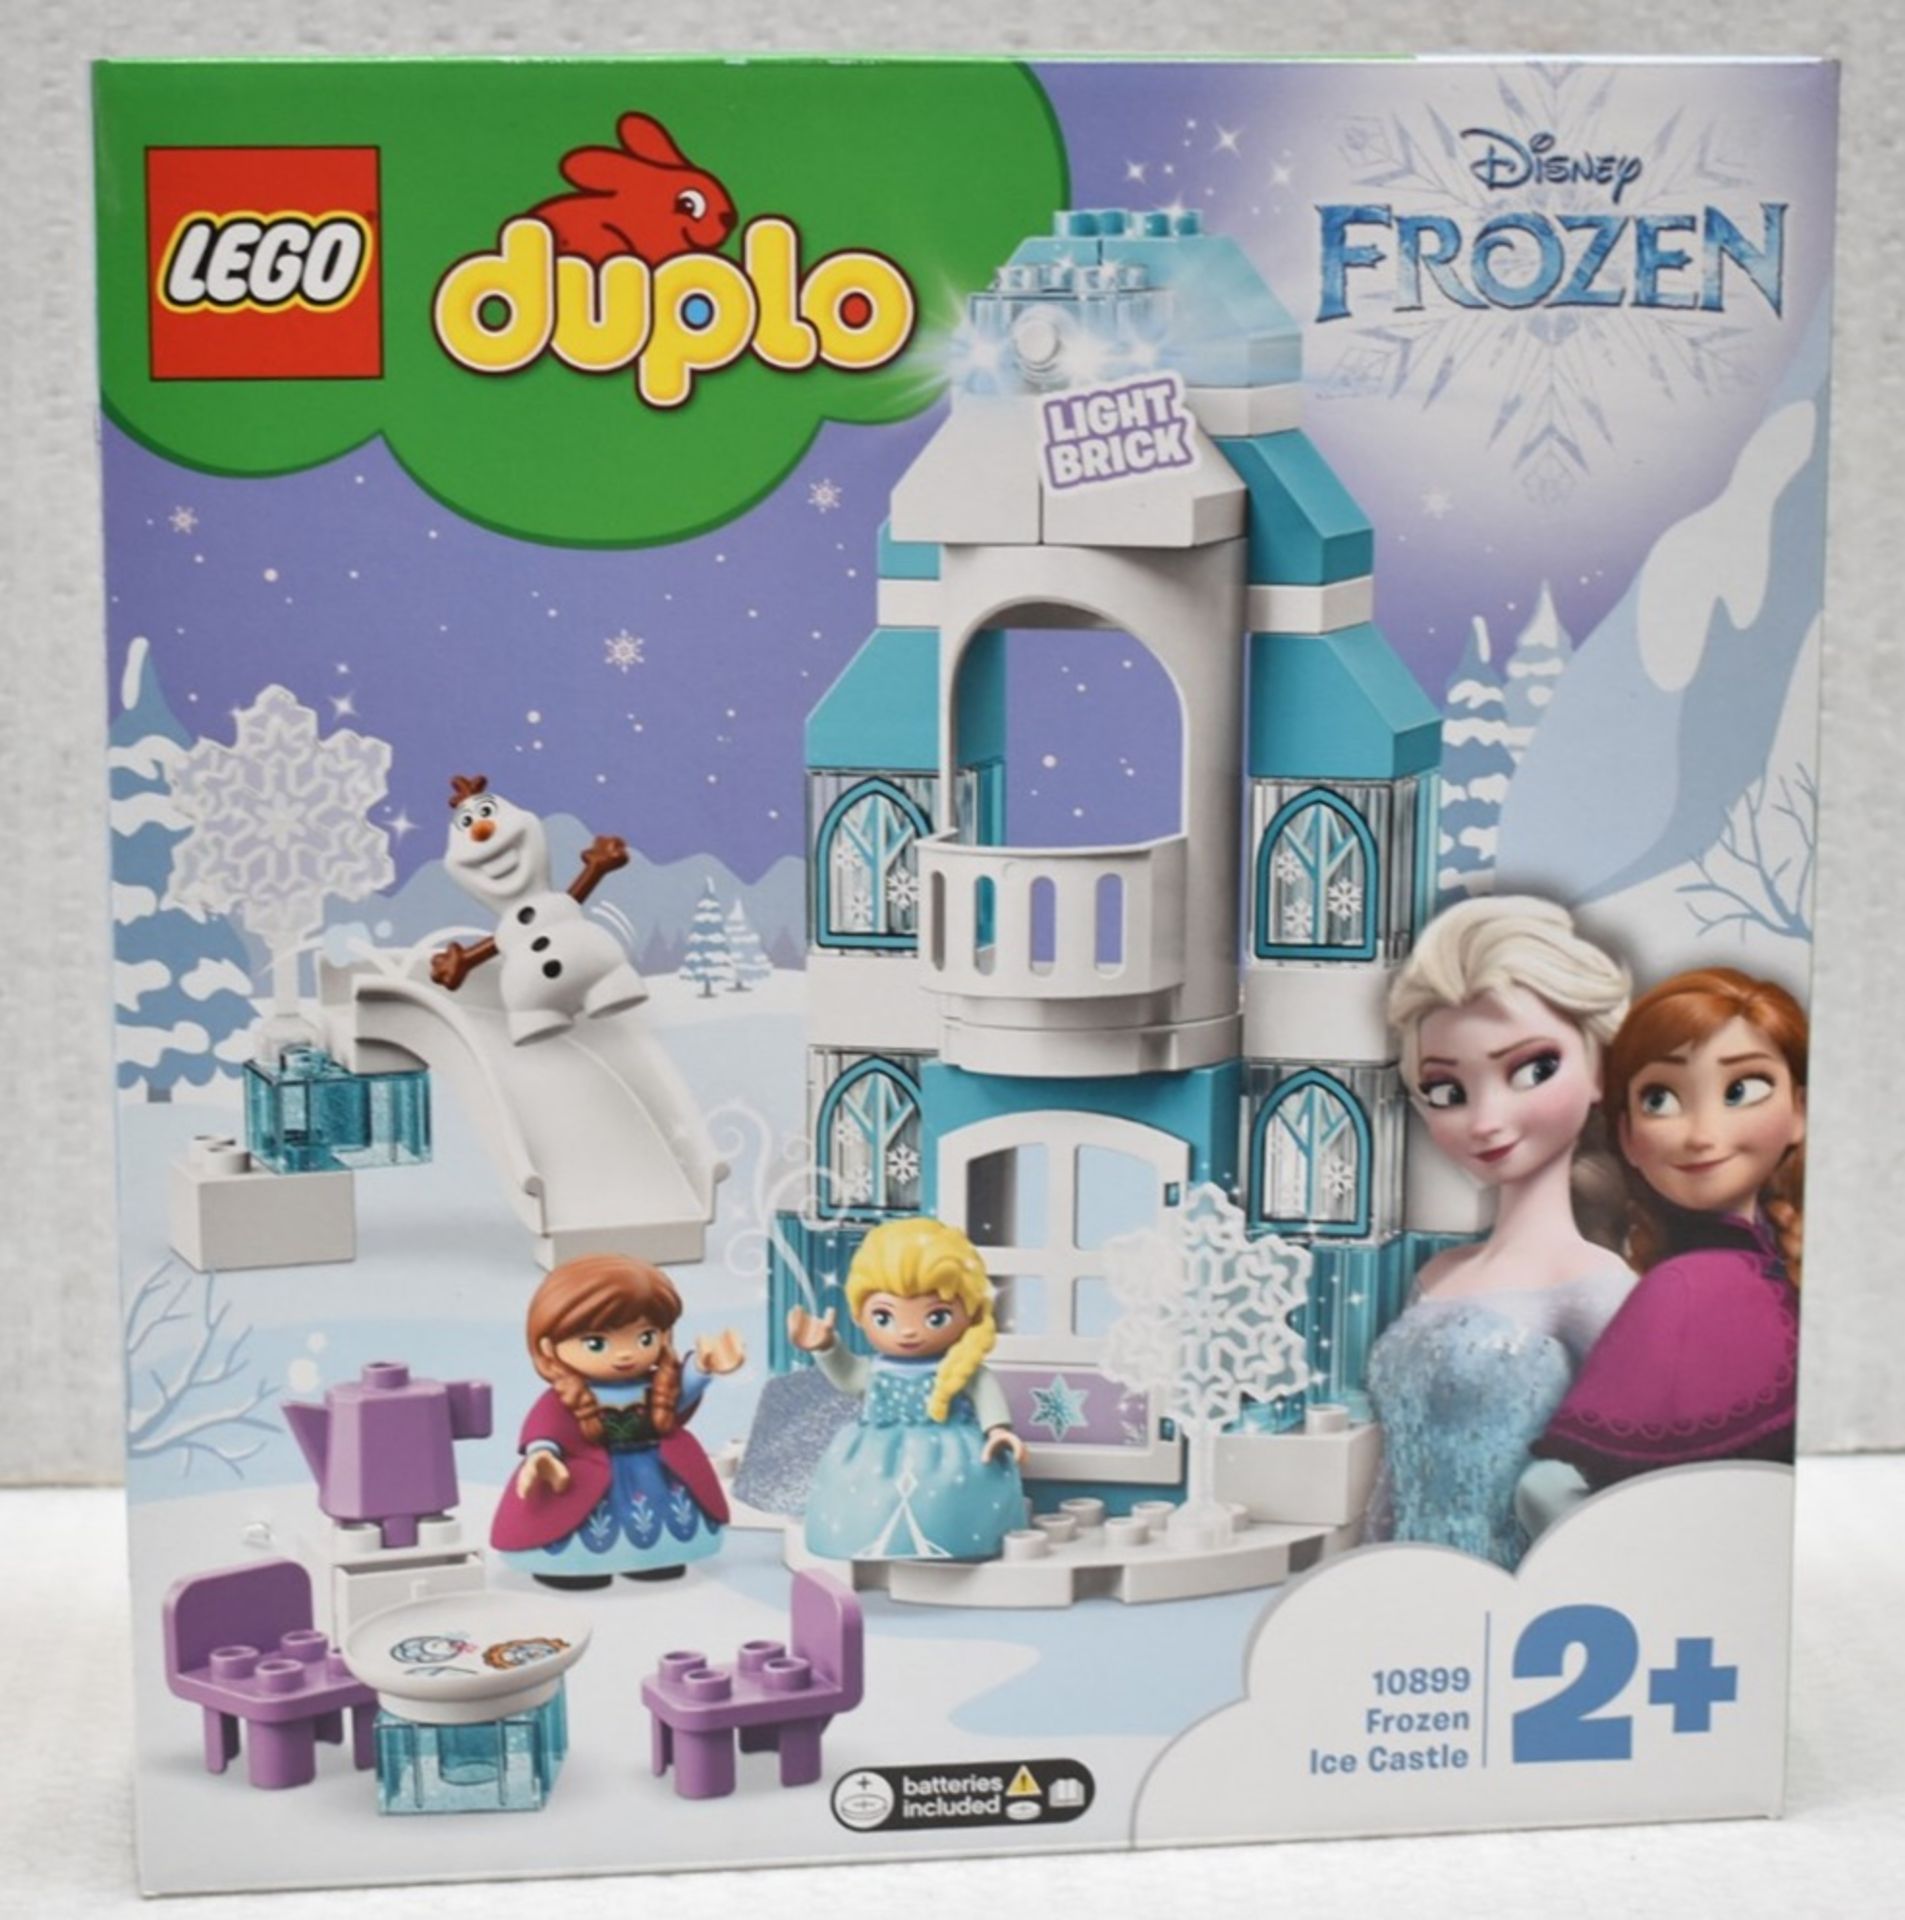 1 x LEGO DUPLO Disney Frozen Ice Castle Set 10899 - Includes 3 Minifigures and Castle Toy Button-